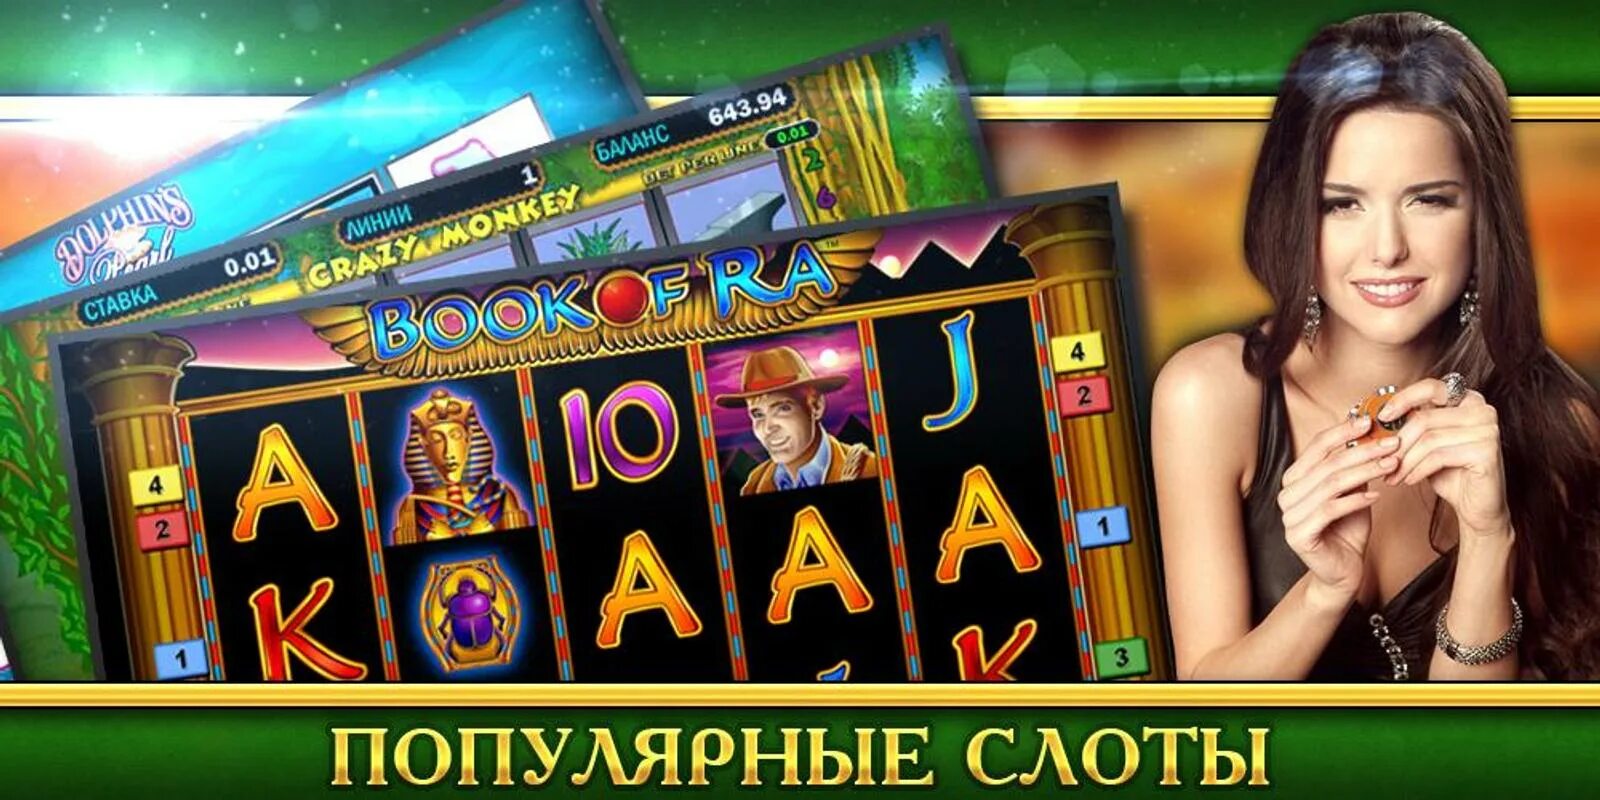 Слоты казино девушки. Гранд казино слот. Казино ссылки. Слот девушка. Web slots casino ru cool air